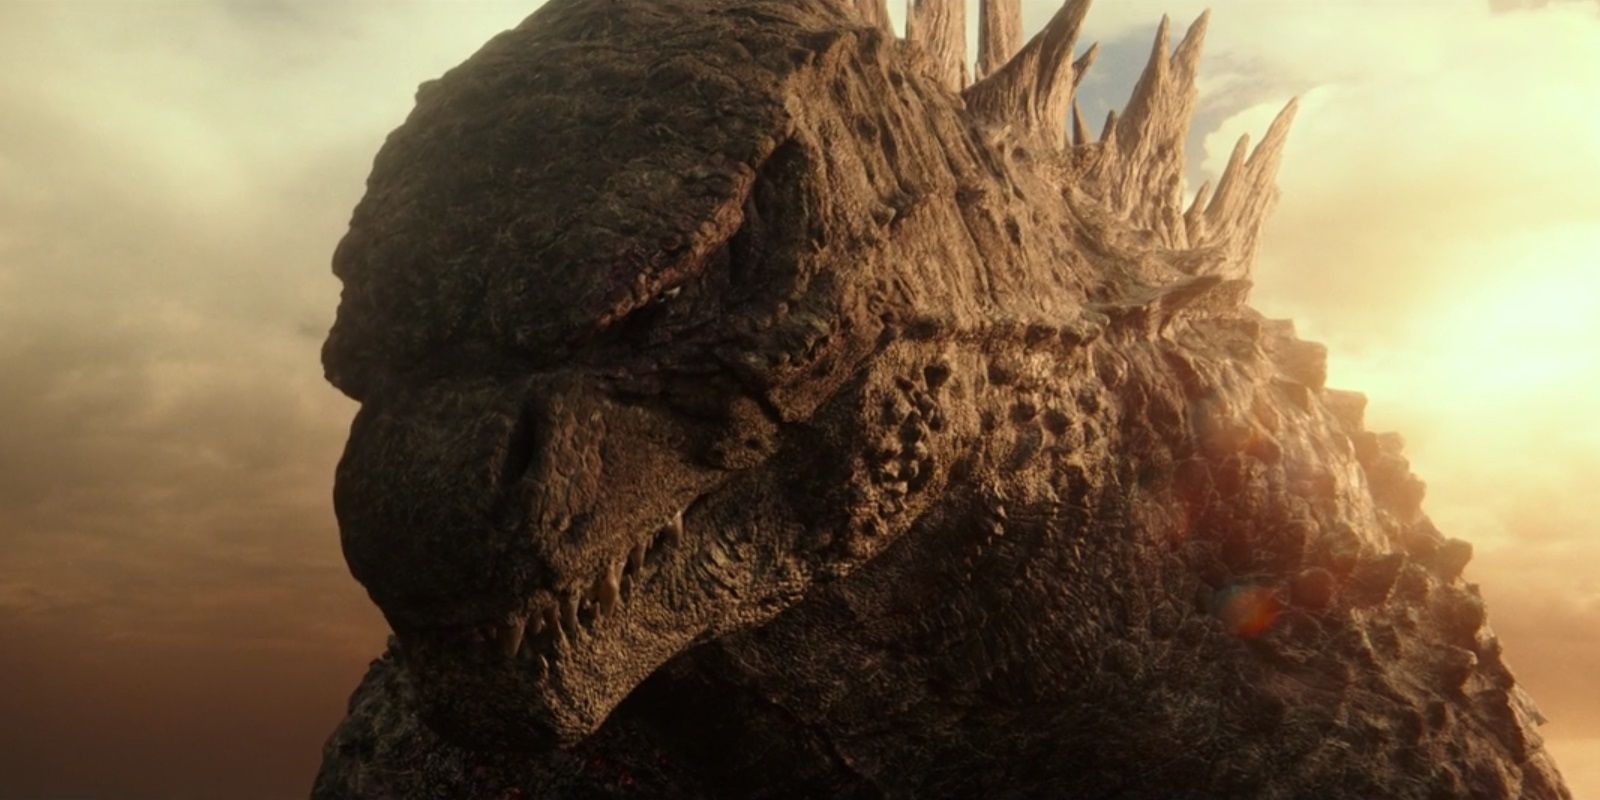 Programa de televisión de Godzilla ambientado en MonsterVerse Happening: obtén los detalles